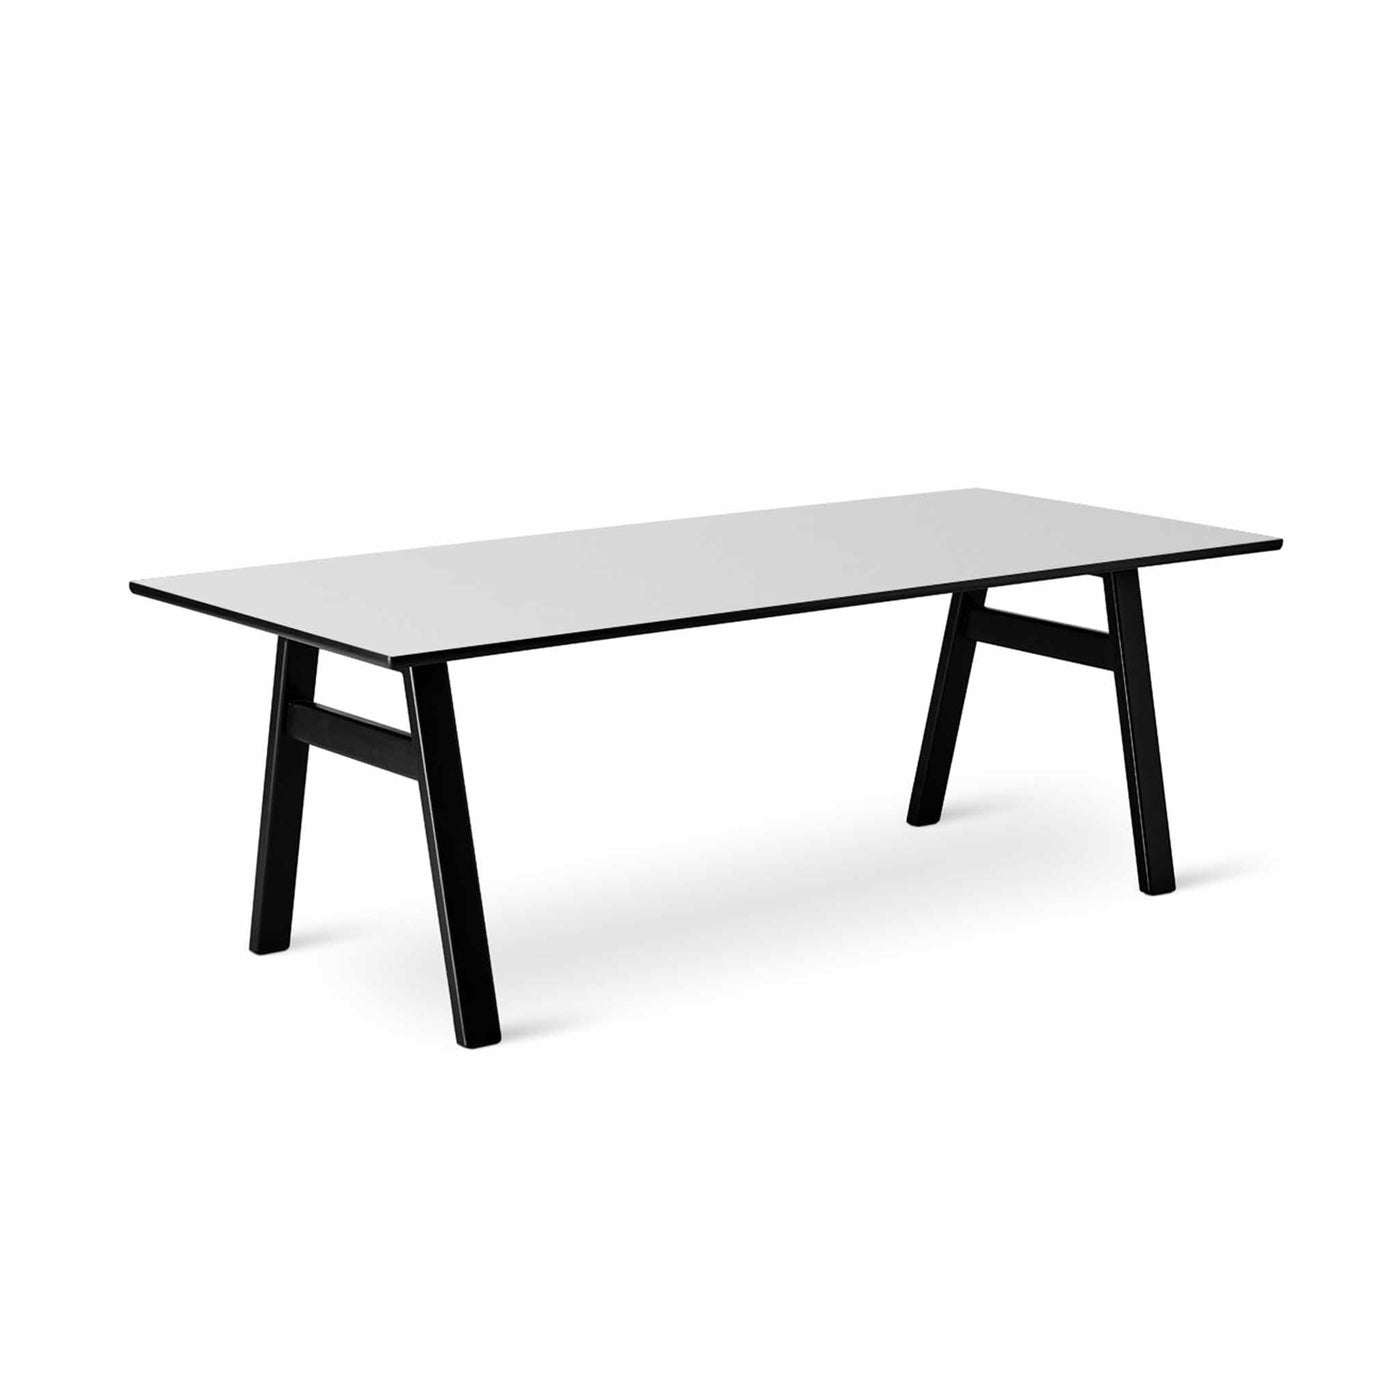 Svane Design Idyl spisebord i 95 x 220 cm med bordplade i hvid nano laminat med ben i sortbejdset bøg.